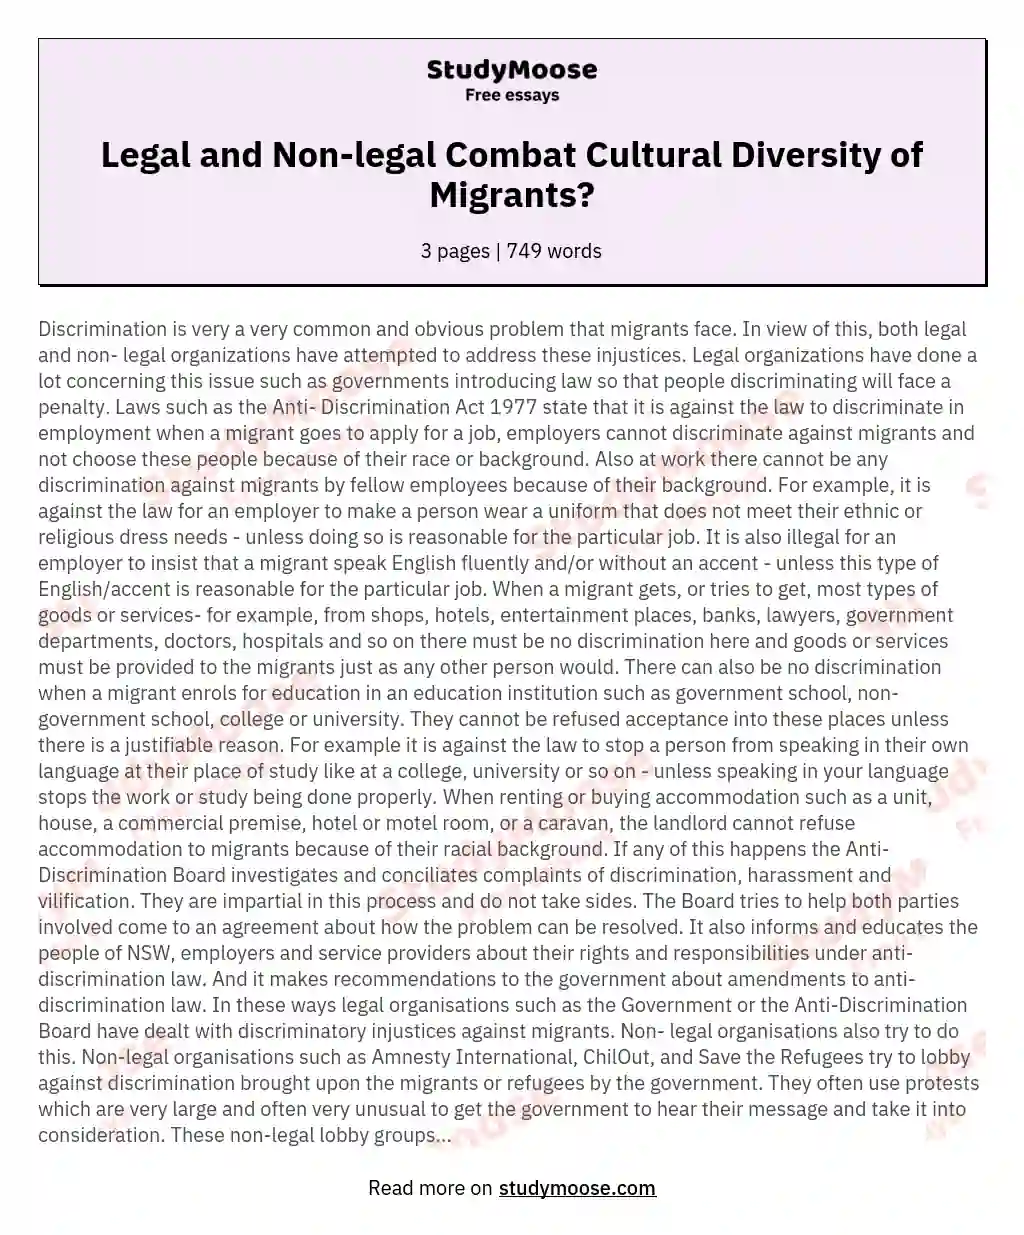 Legal and Non-legal Combat Cultural Diversity of Migrants? essay